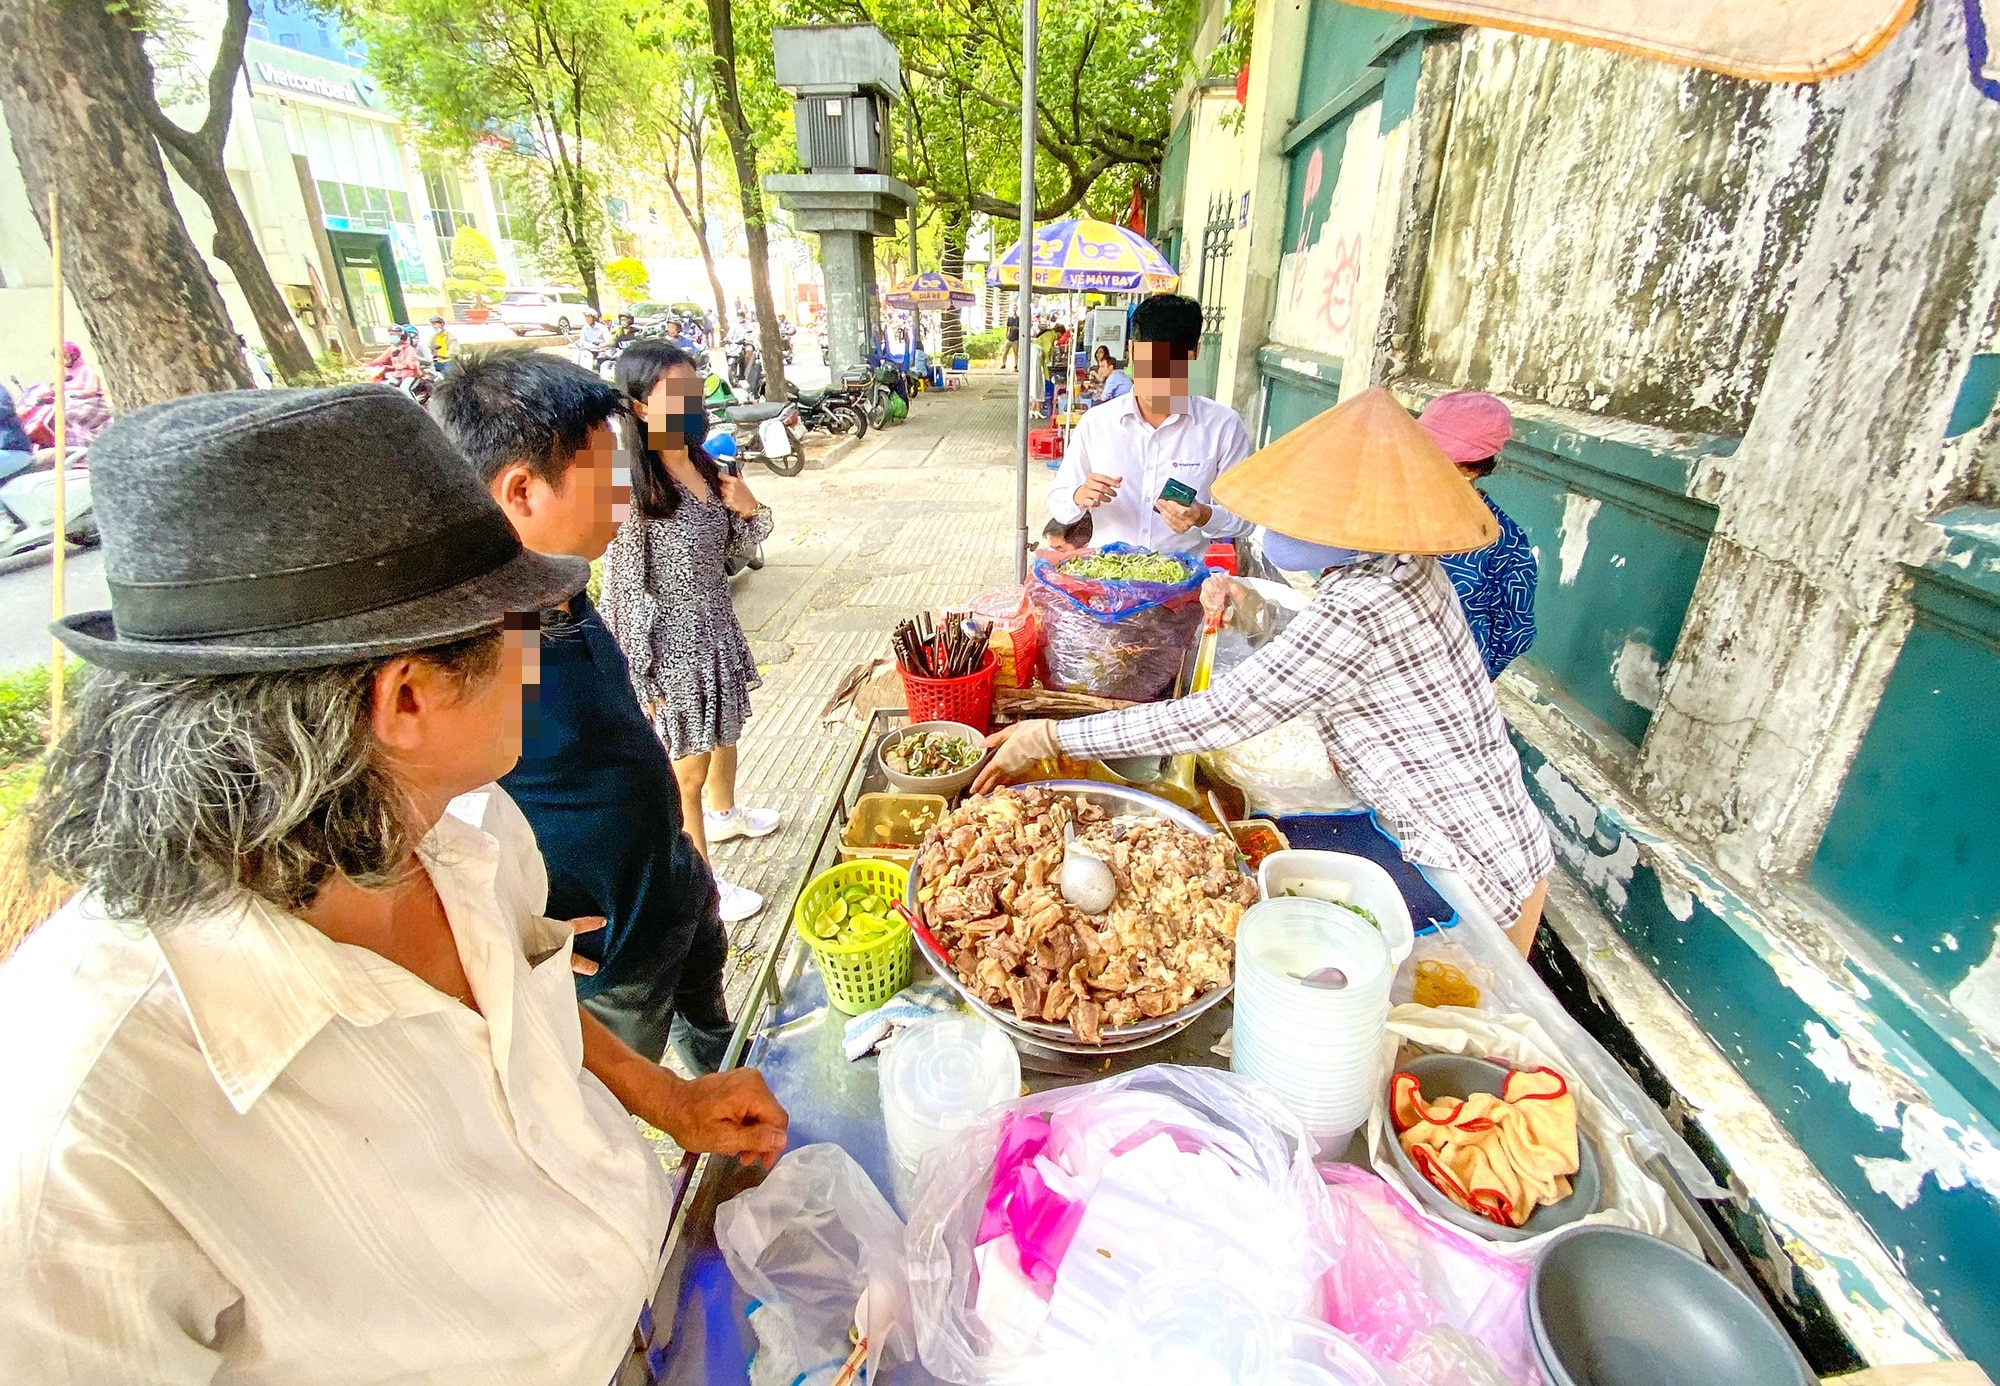 Bún bò bán trên vỉa hè đường Nguyễn Thị Minh Khai, quận 3, TP.HCM - Ảnh: QUANG ĐỊNH